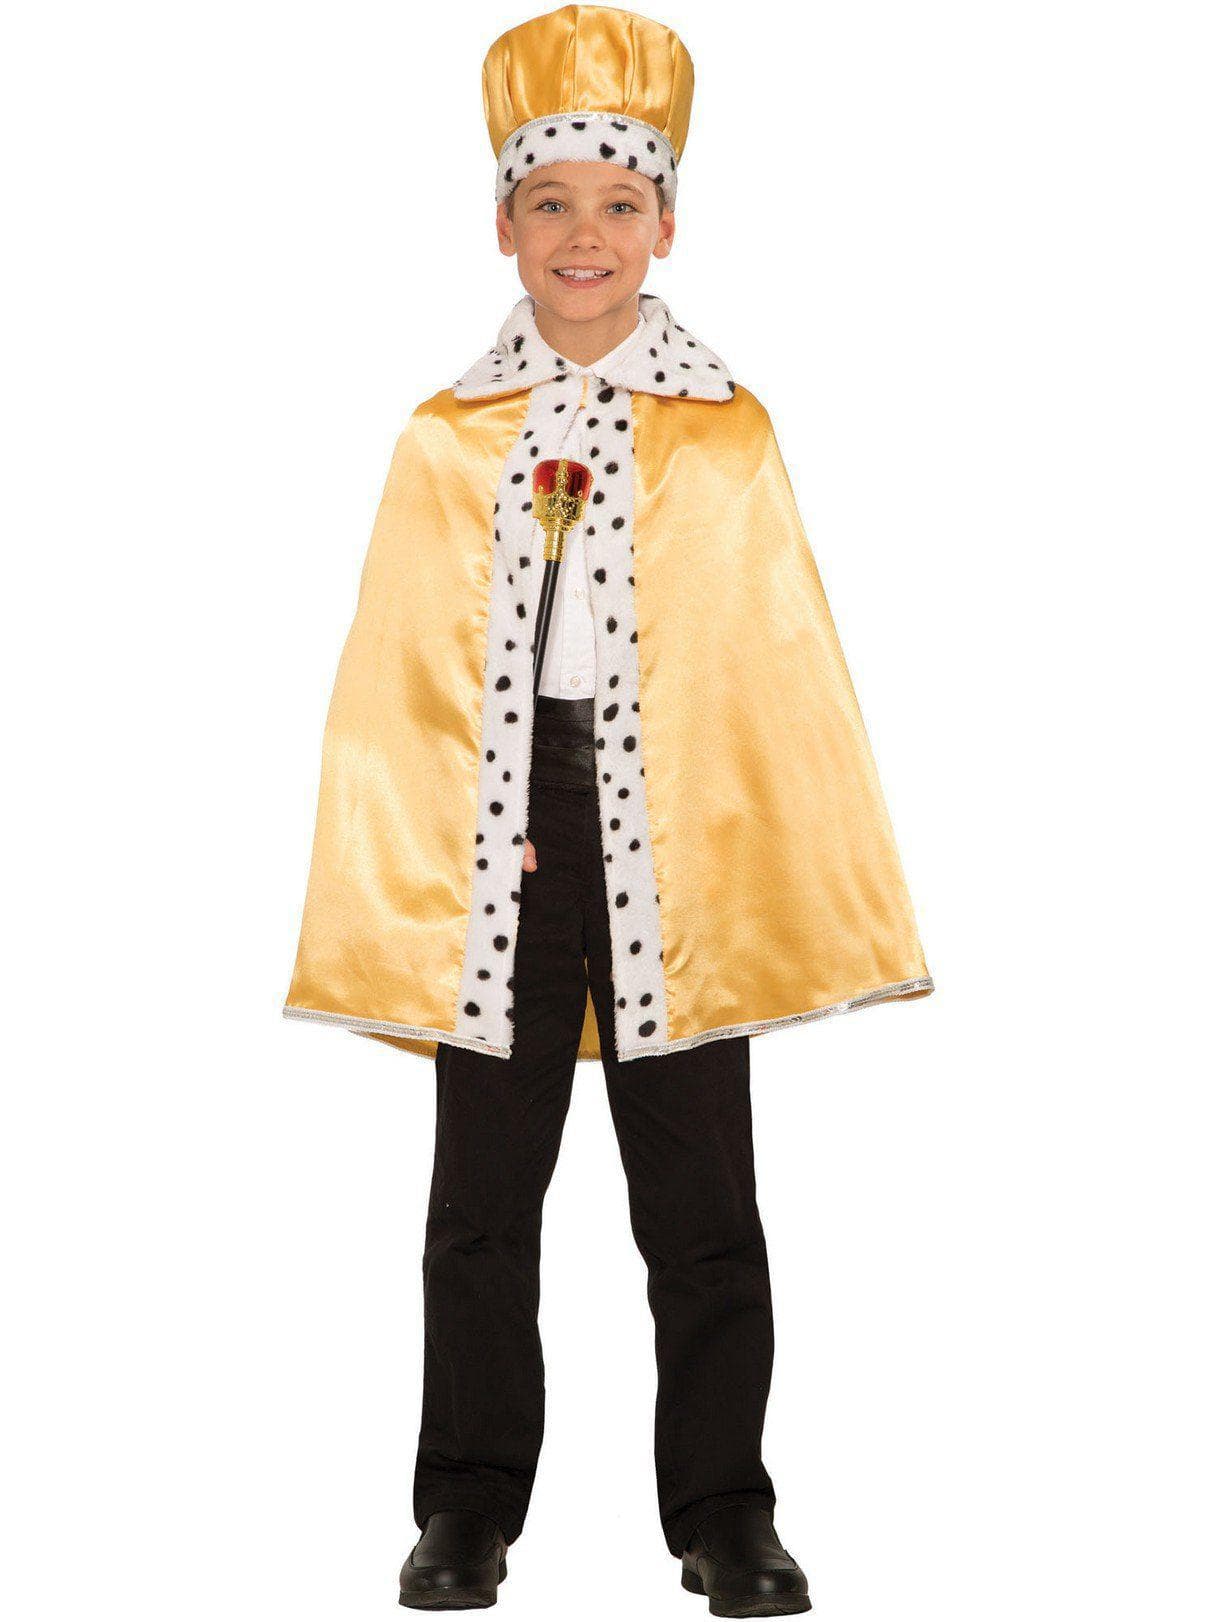 Kids' Gold Faux Fur Trimmed Cape - costumes.com